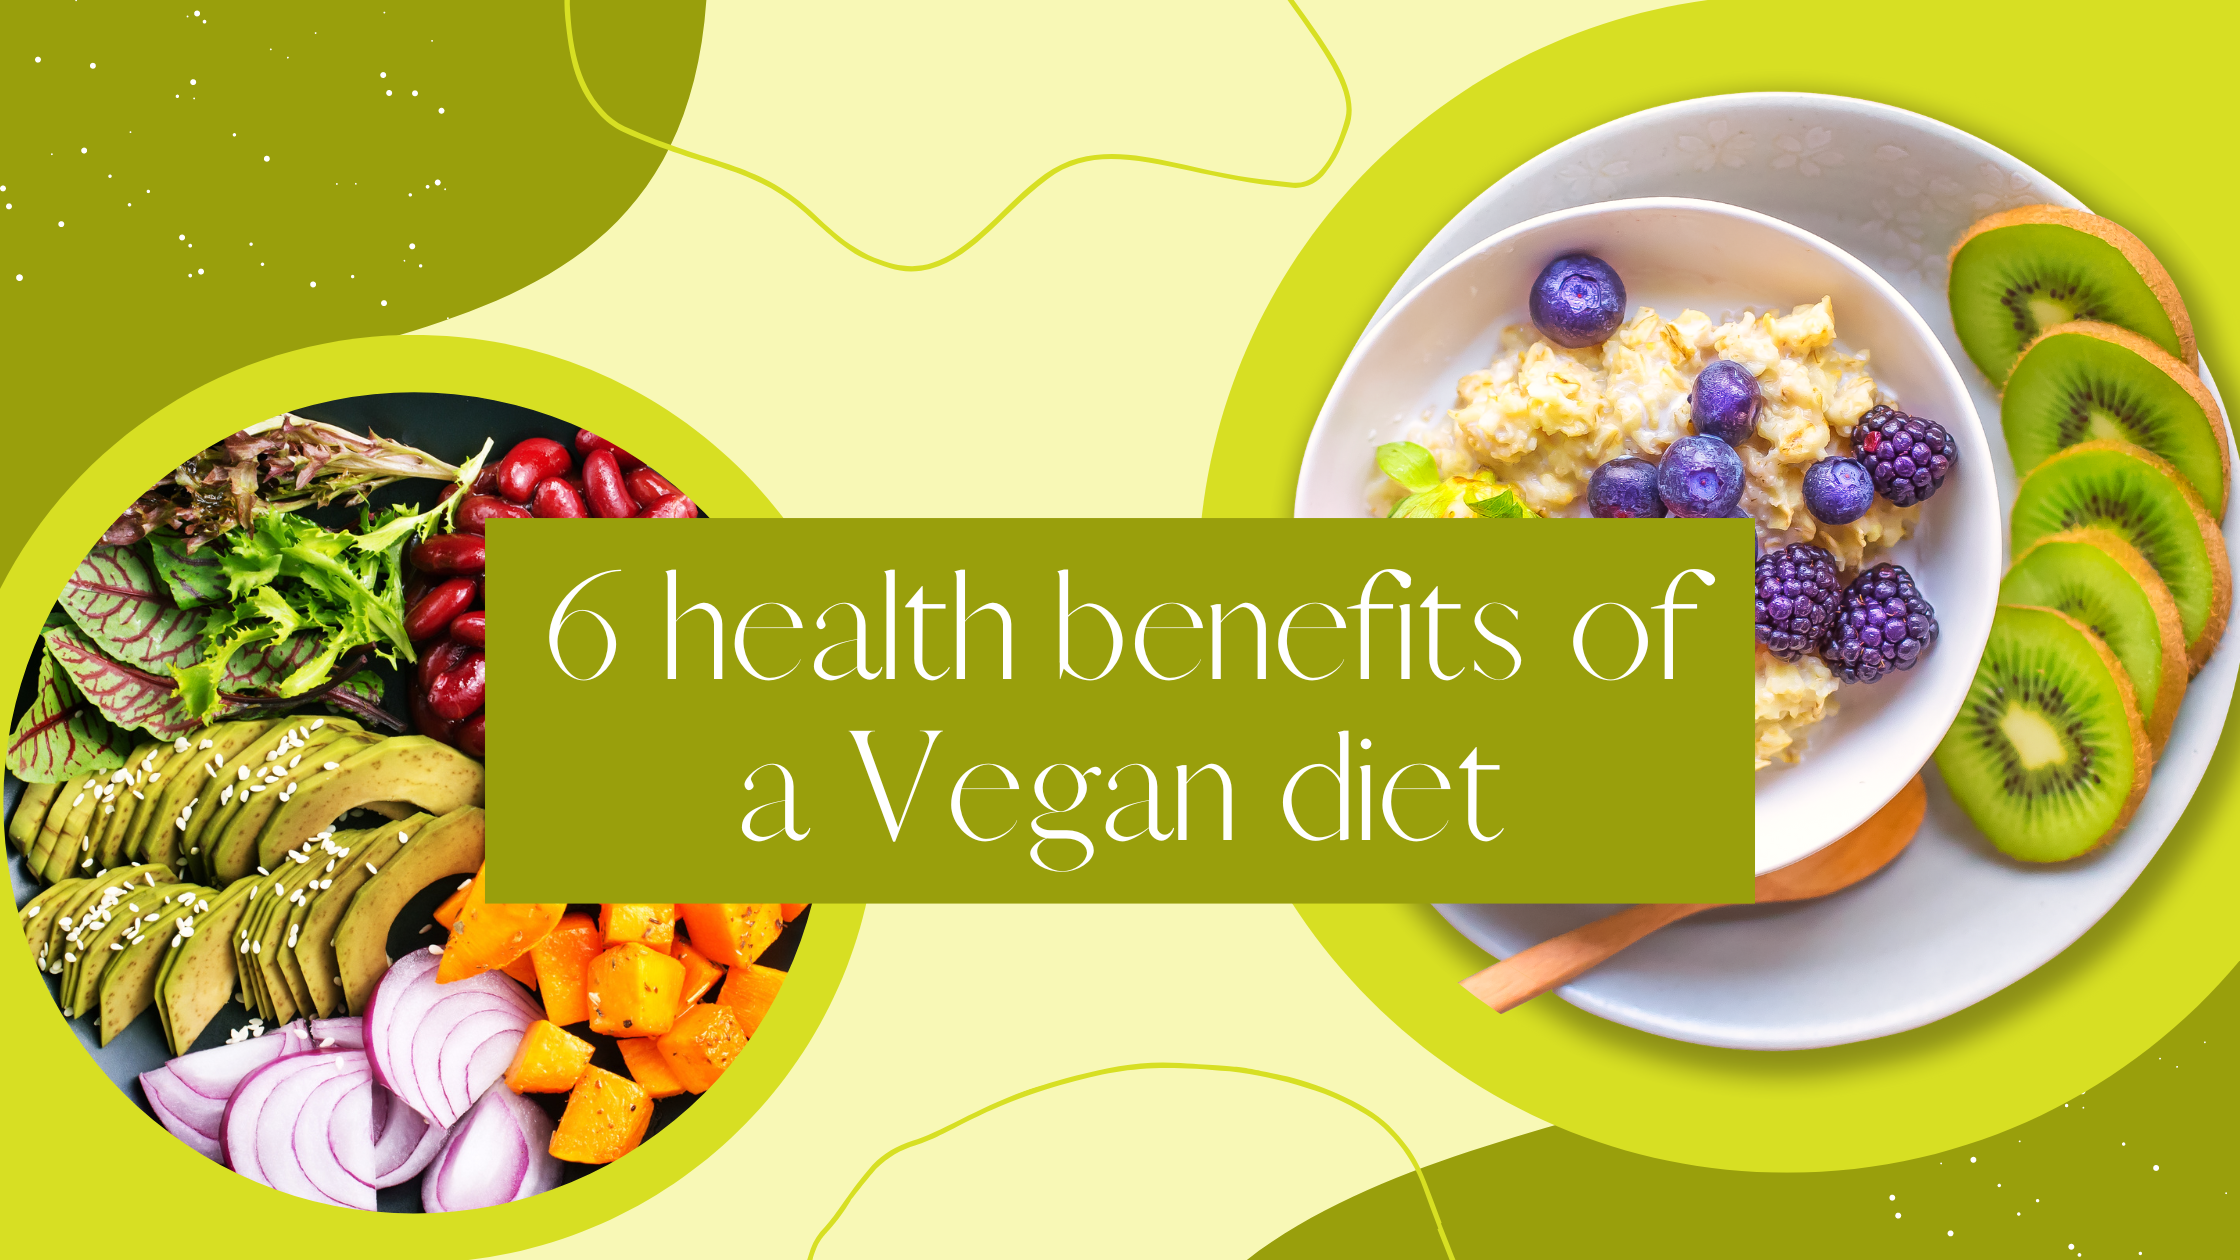 6 health benefits of a Vegan diet